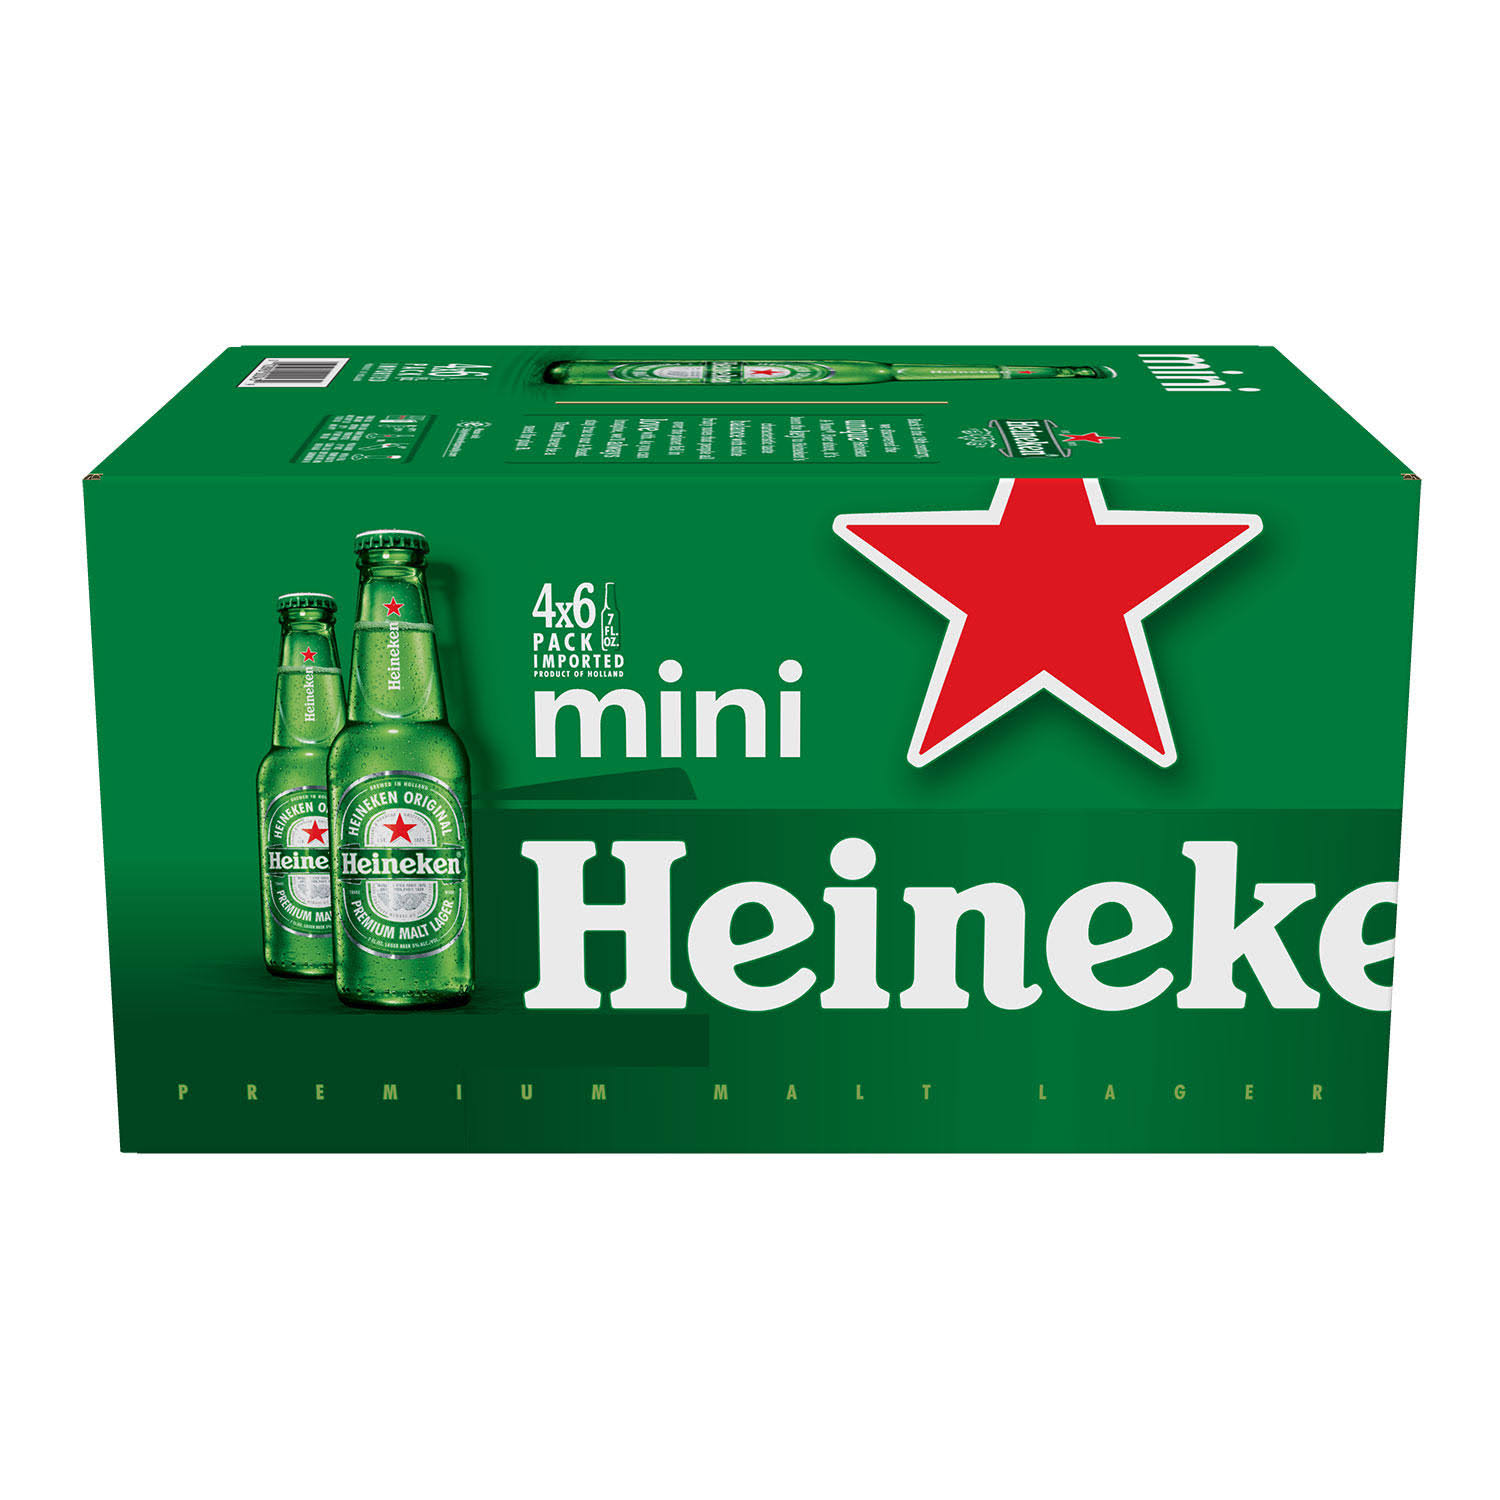 Heineken Lager Beer - 7 oz, 24 pk